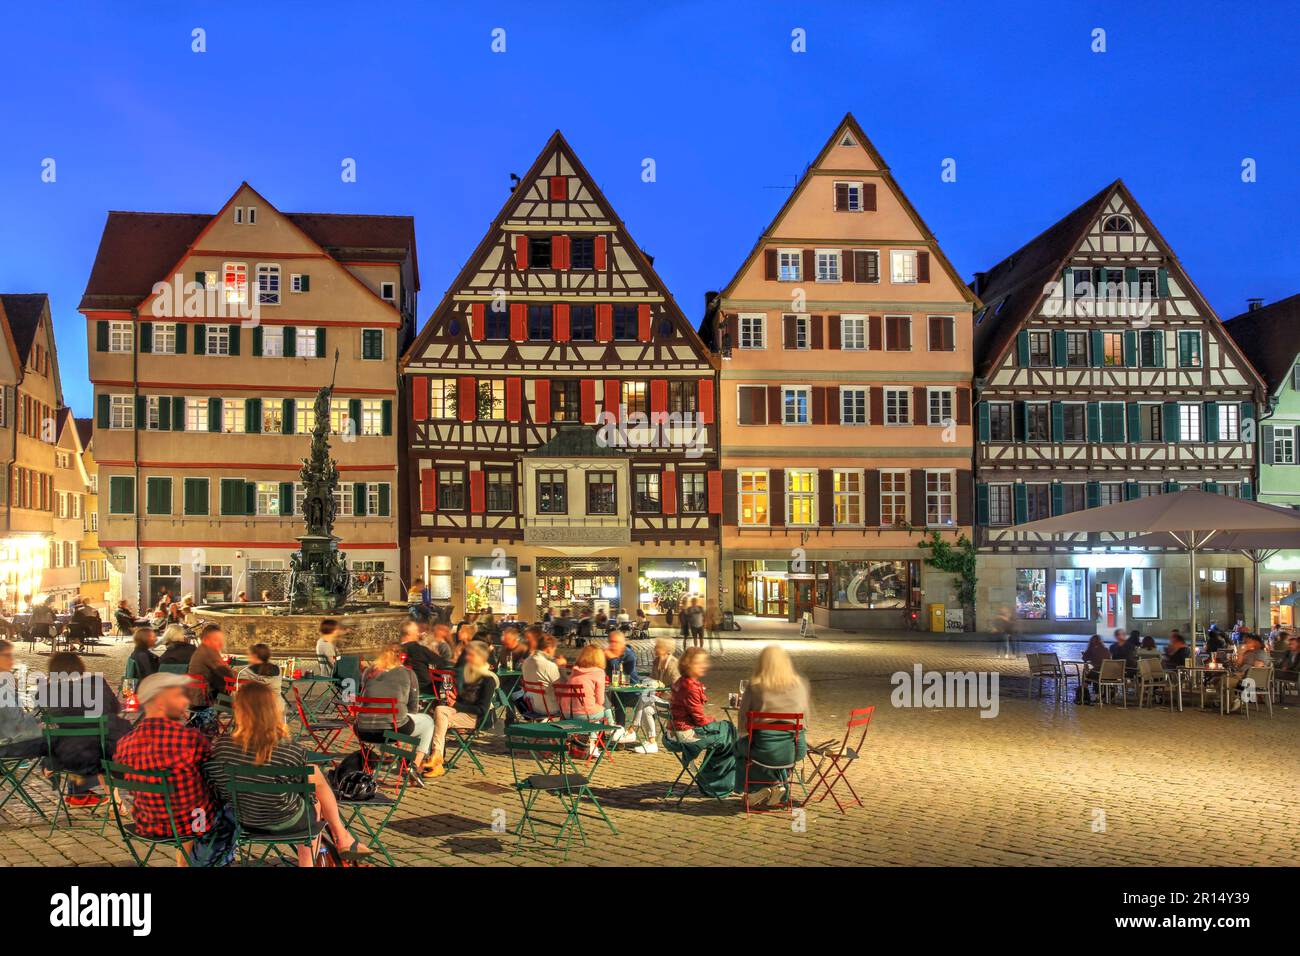 Case storiche a Marktplatz (Piazza del mercato) nella città universitaria di Tübingen, nella regione tedesca di Baden-Württemberg, durante una serata estiva. Foto Stock